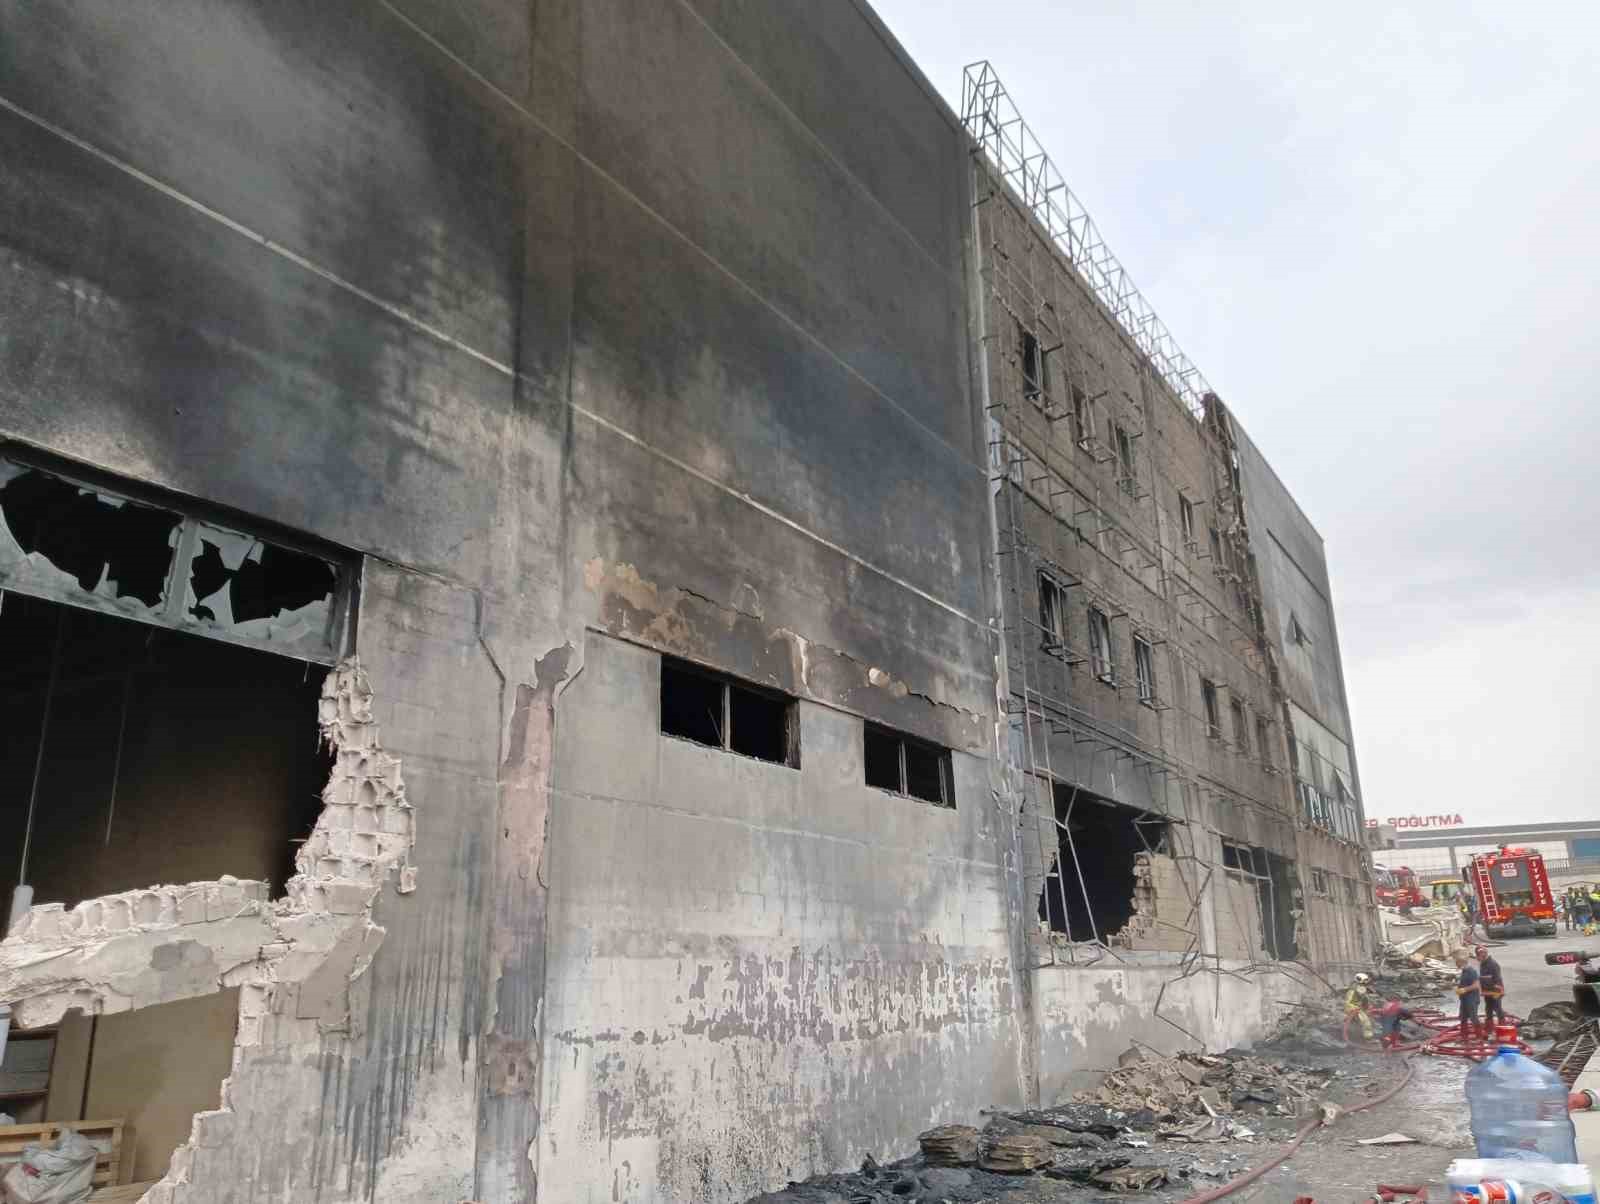 Ankara’daki fabrika yangını kontrol altına alındı
